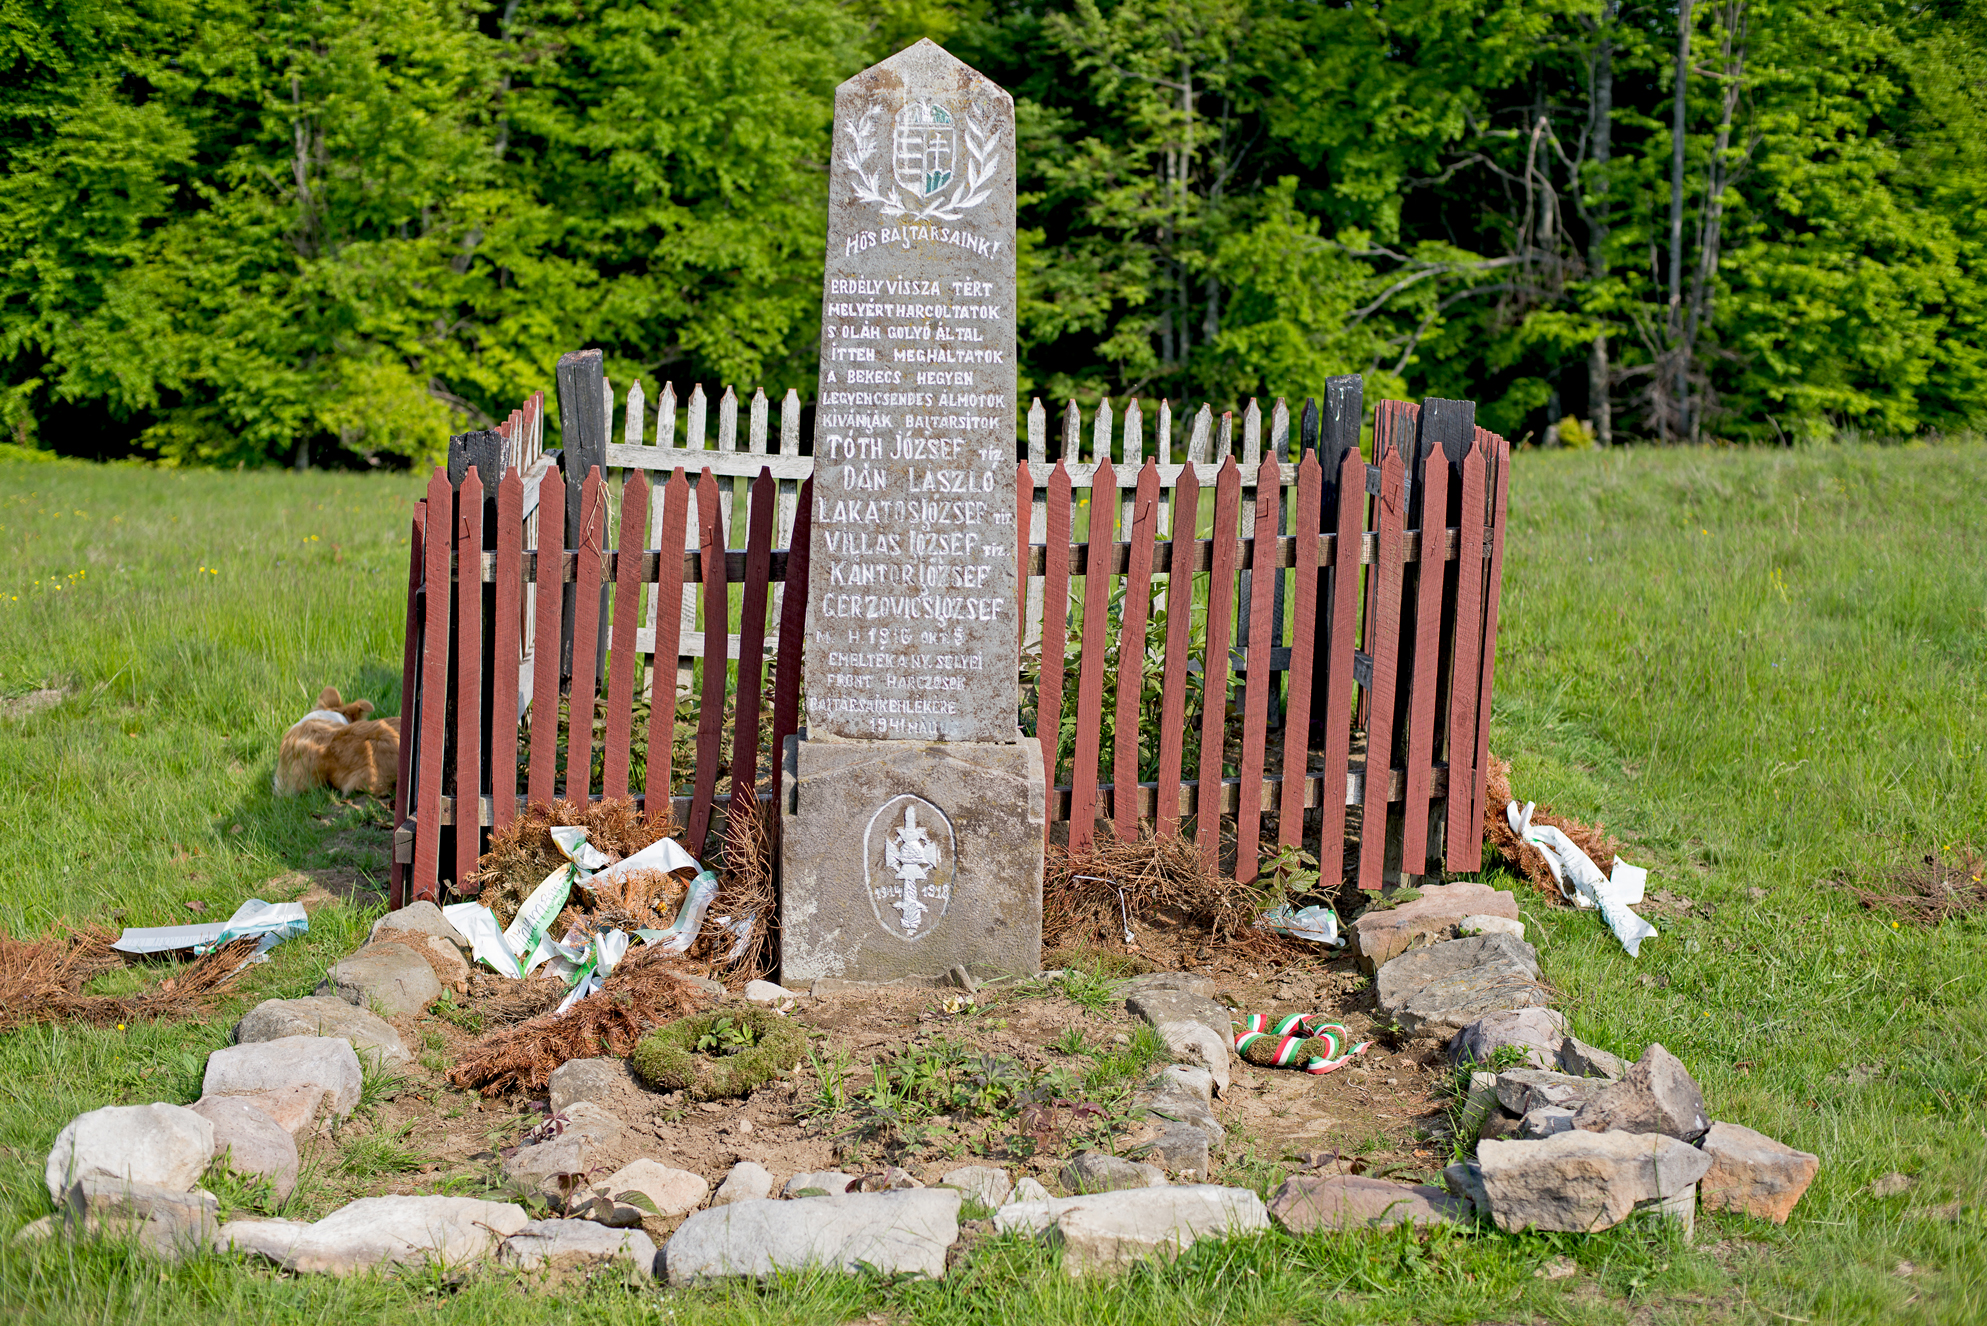 Cimitirul Honvezilor - Honvédsírok - Honvéd cemetery